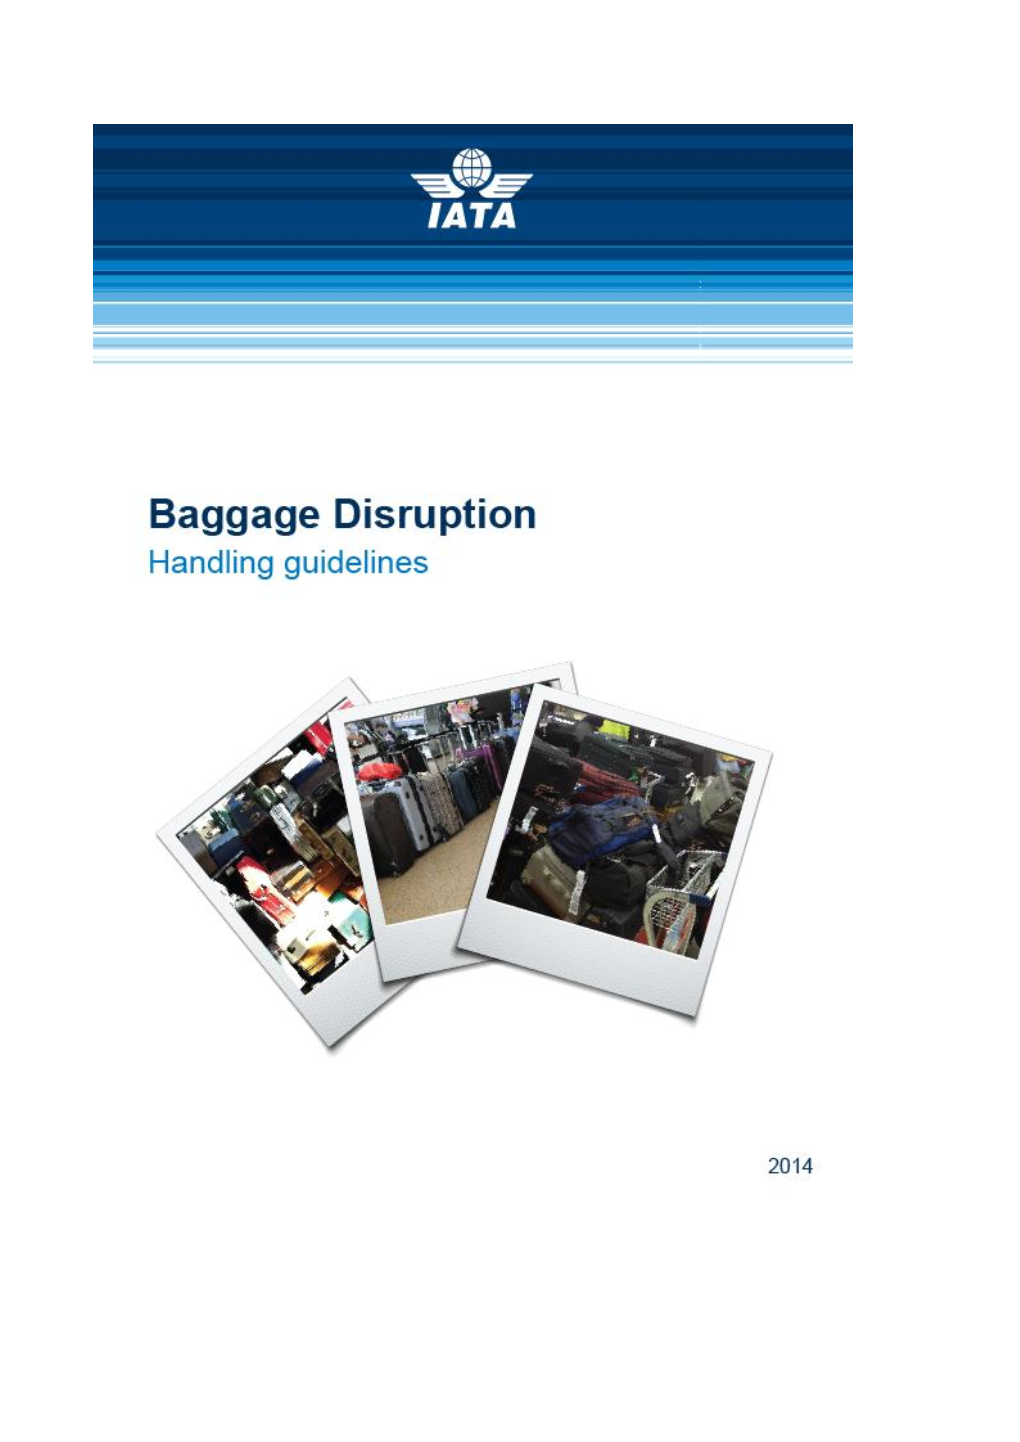 Baggage Handling Disruption Manual